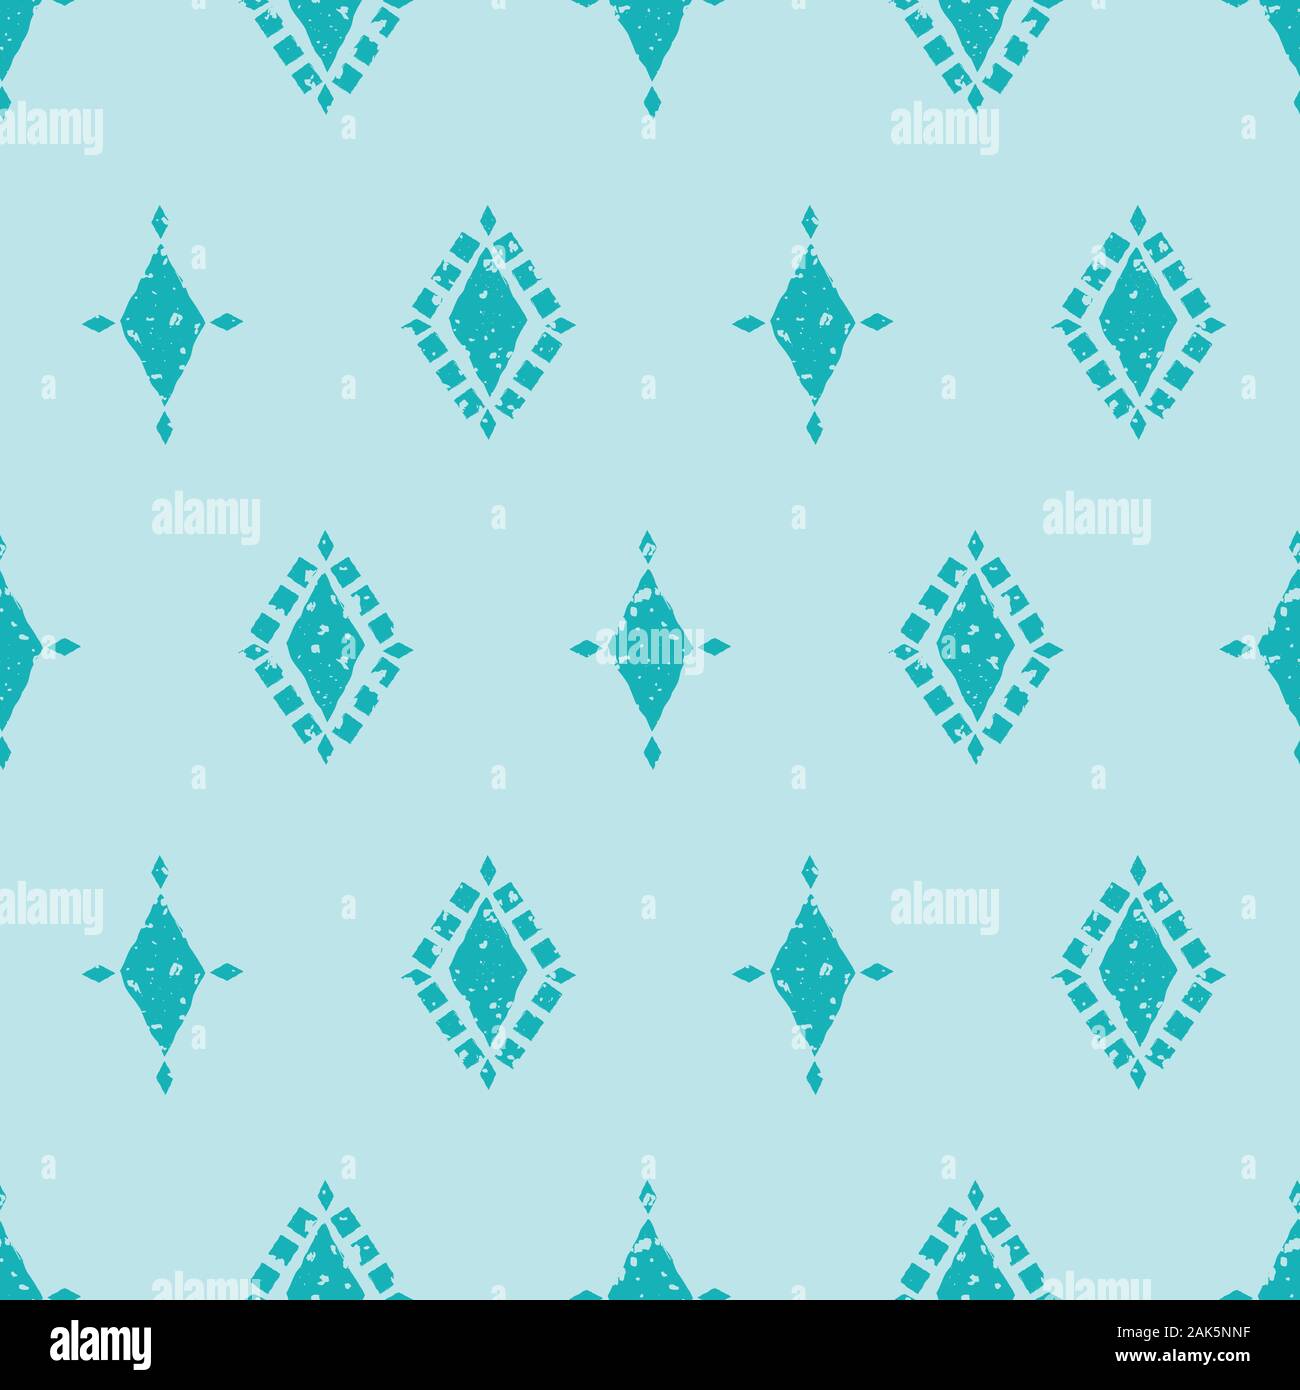 Vektor aqua und Light Blue Diamond Muster Hintergrund. Vektor nahtlose geometrischen Design mit unregelmäßigen malerische Wirkung. Toll für Wellness, Sommer Stock Vektor